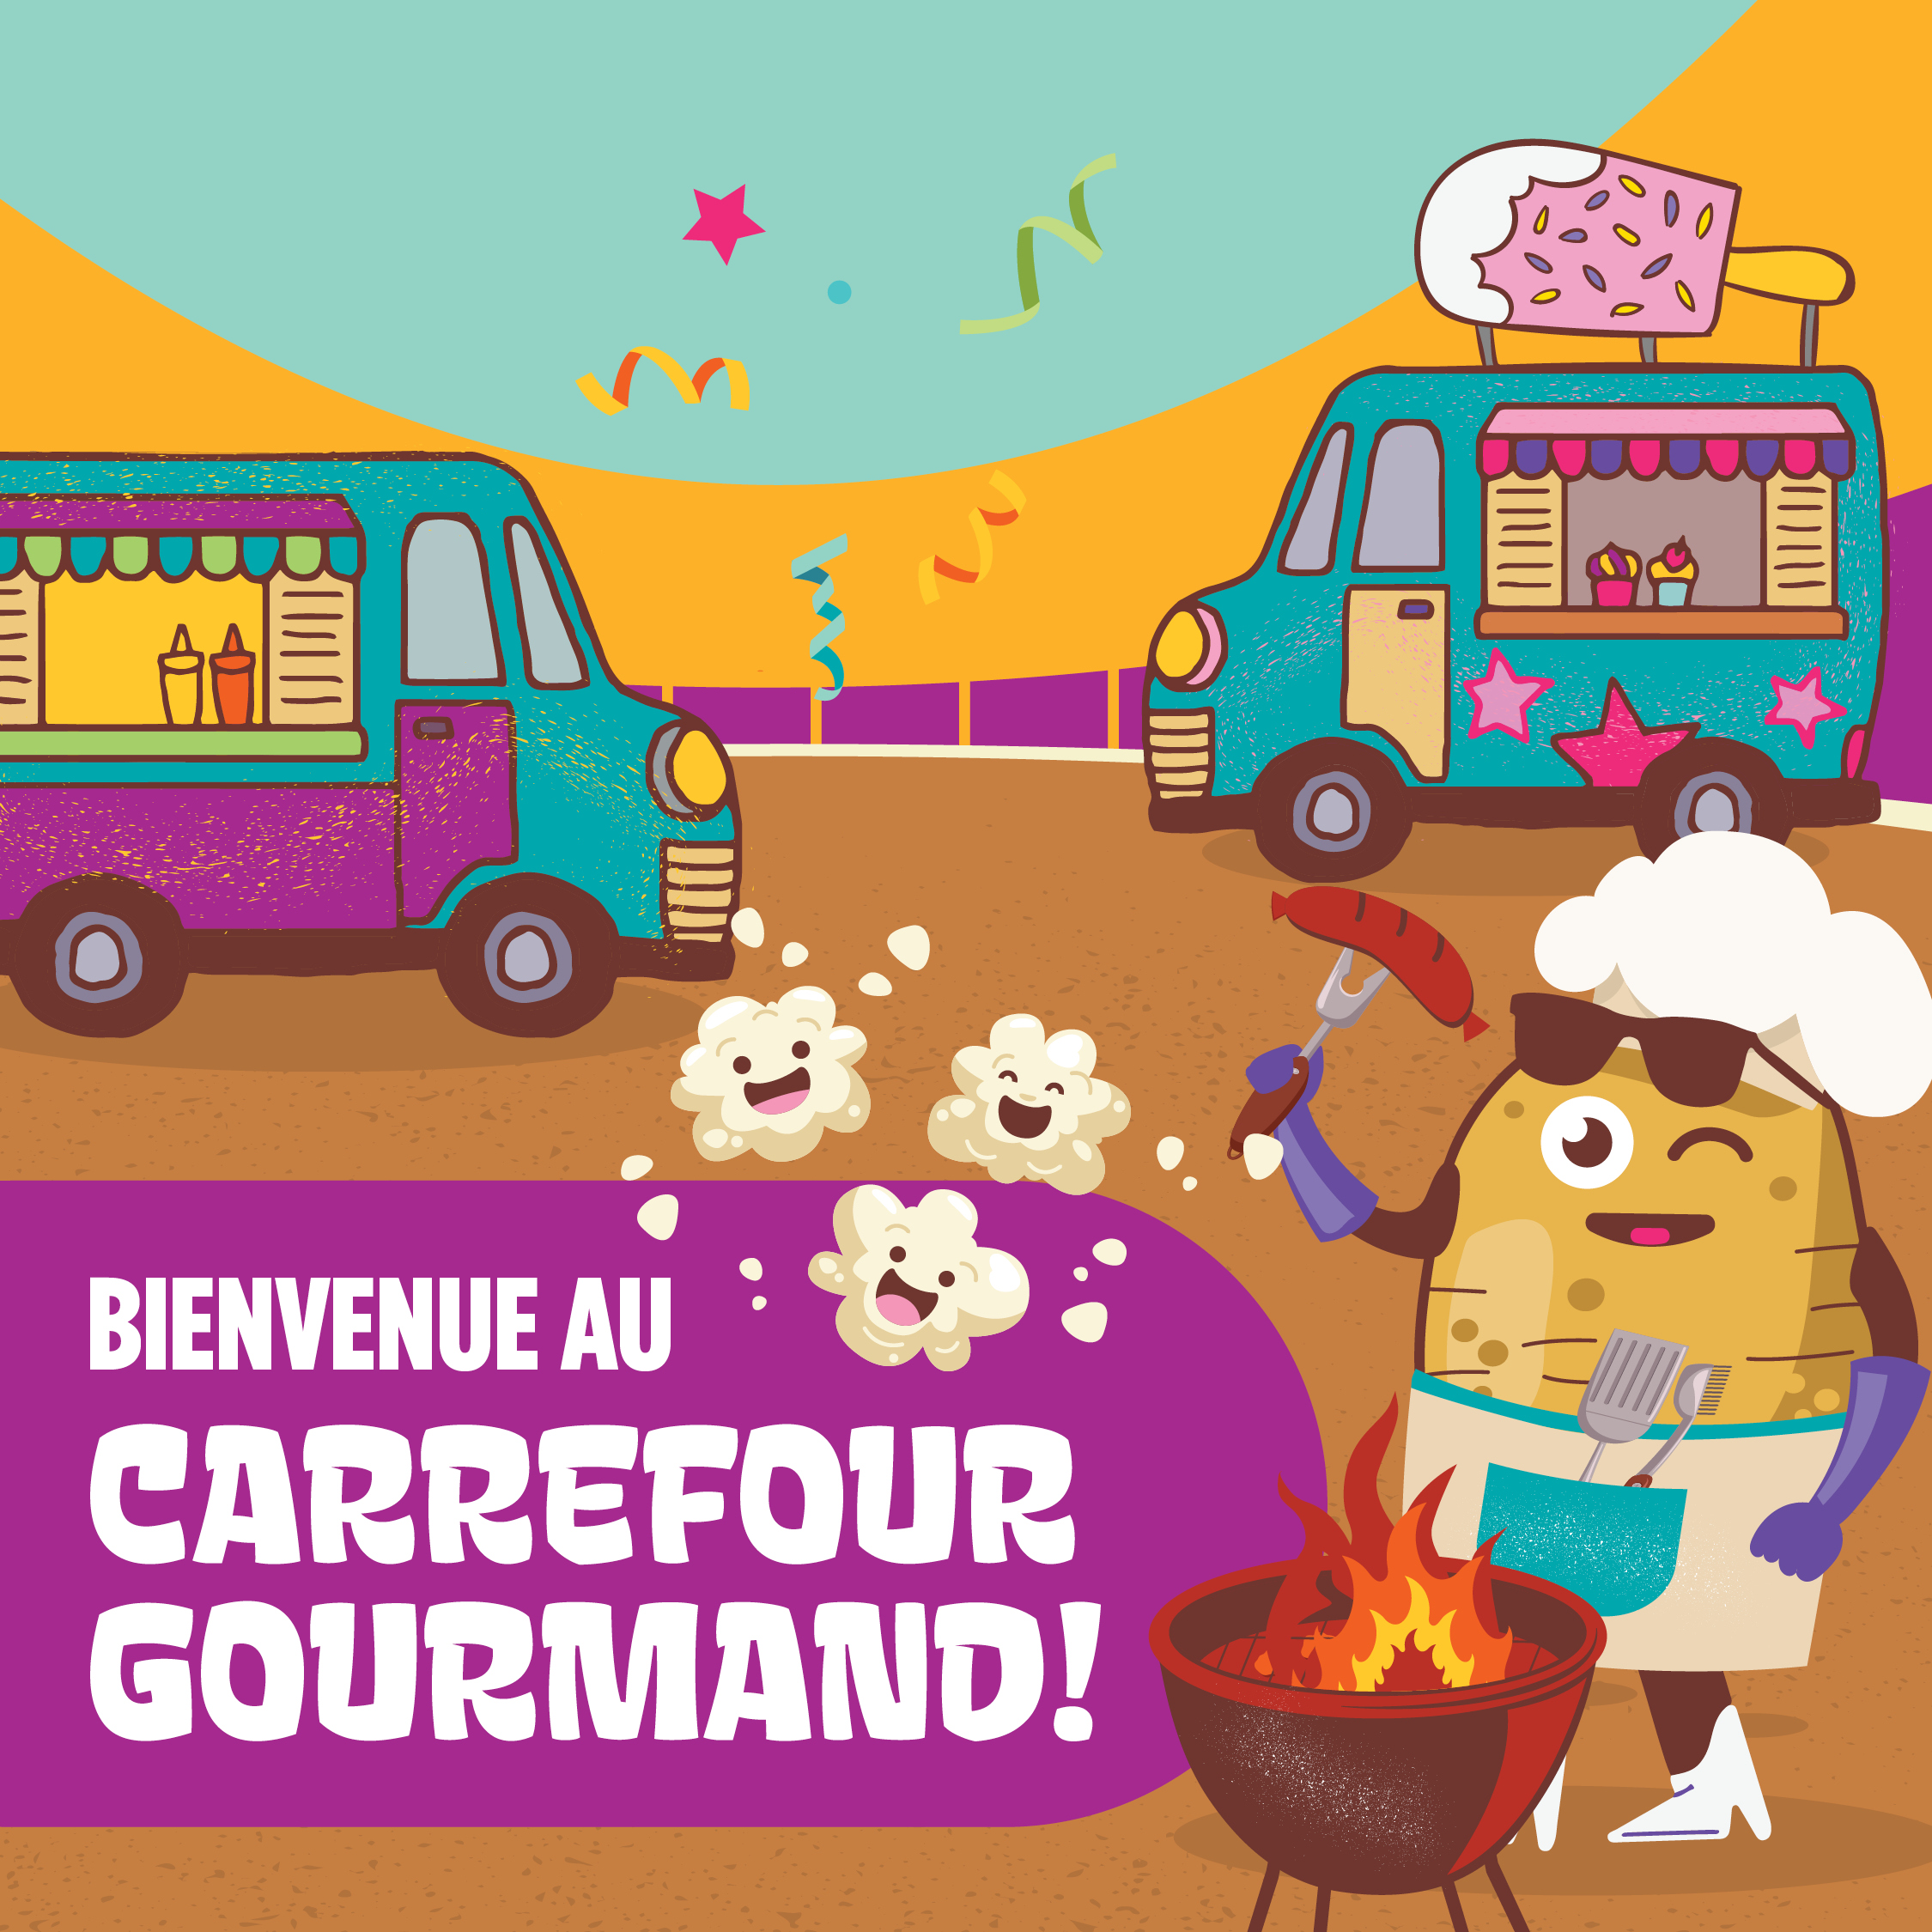 Carrefour gourmand